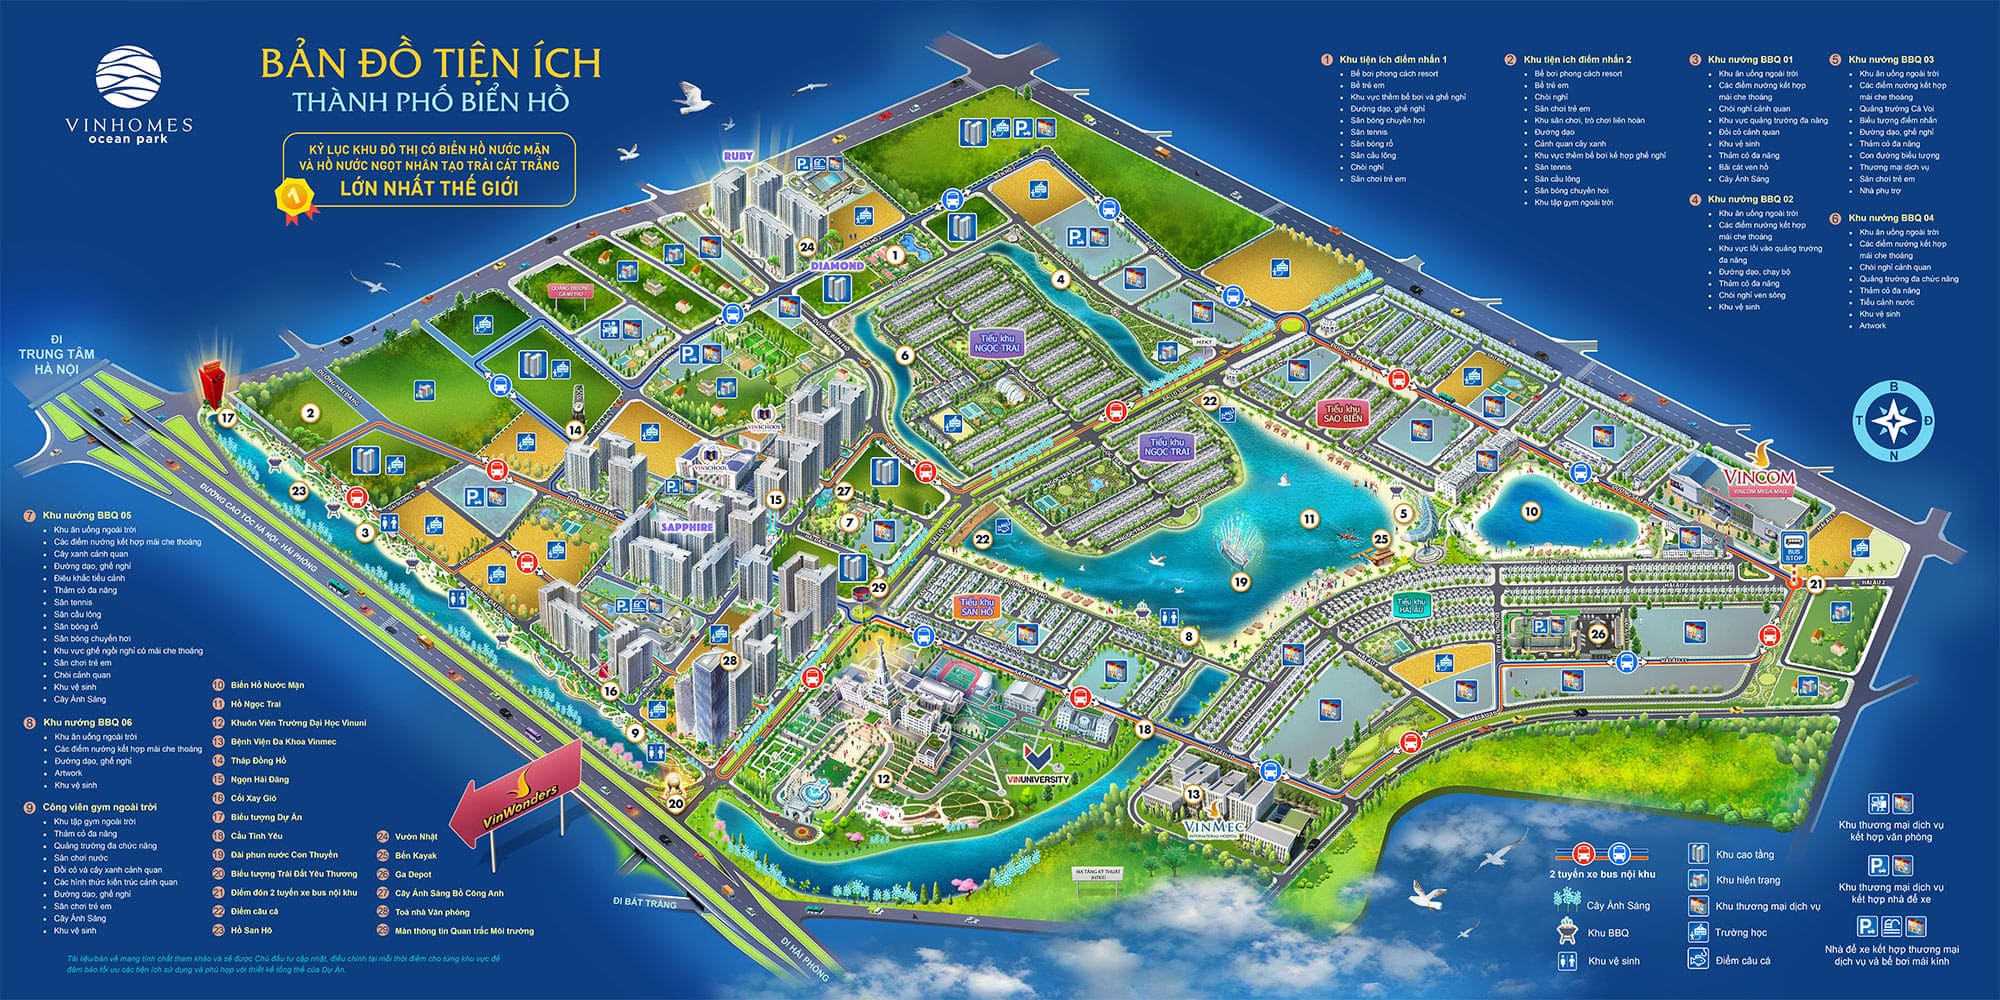 Bản đồ tiện ích đại đô thị Vinhomes Ocean Park mang đến cho cư dân không gian sống lý tưởng.